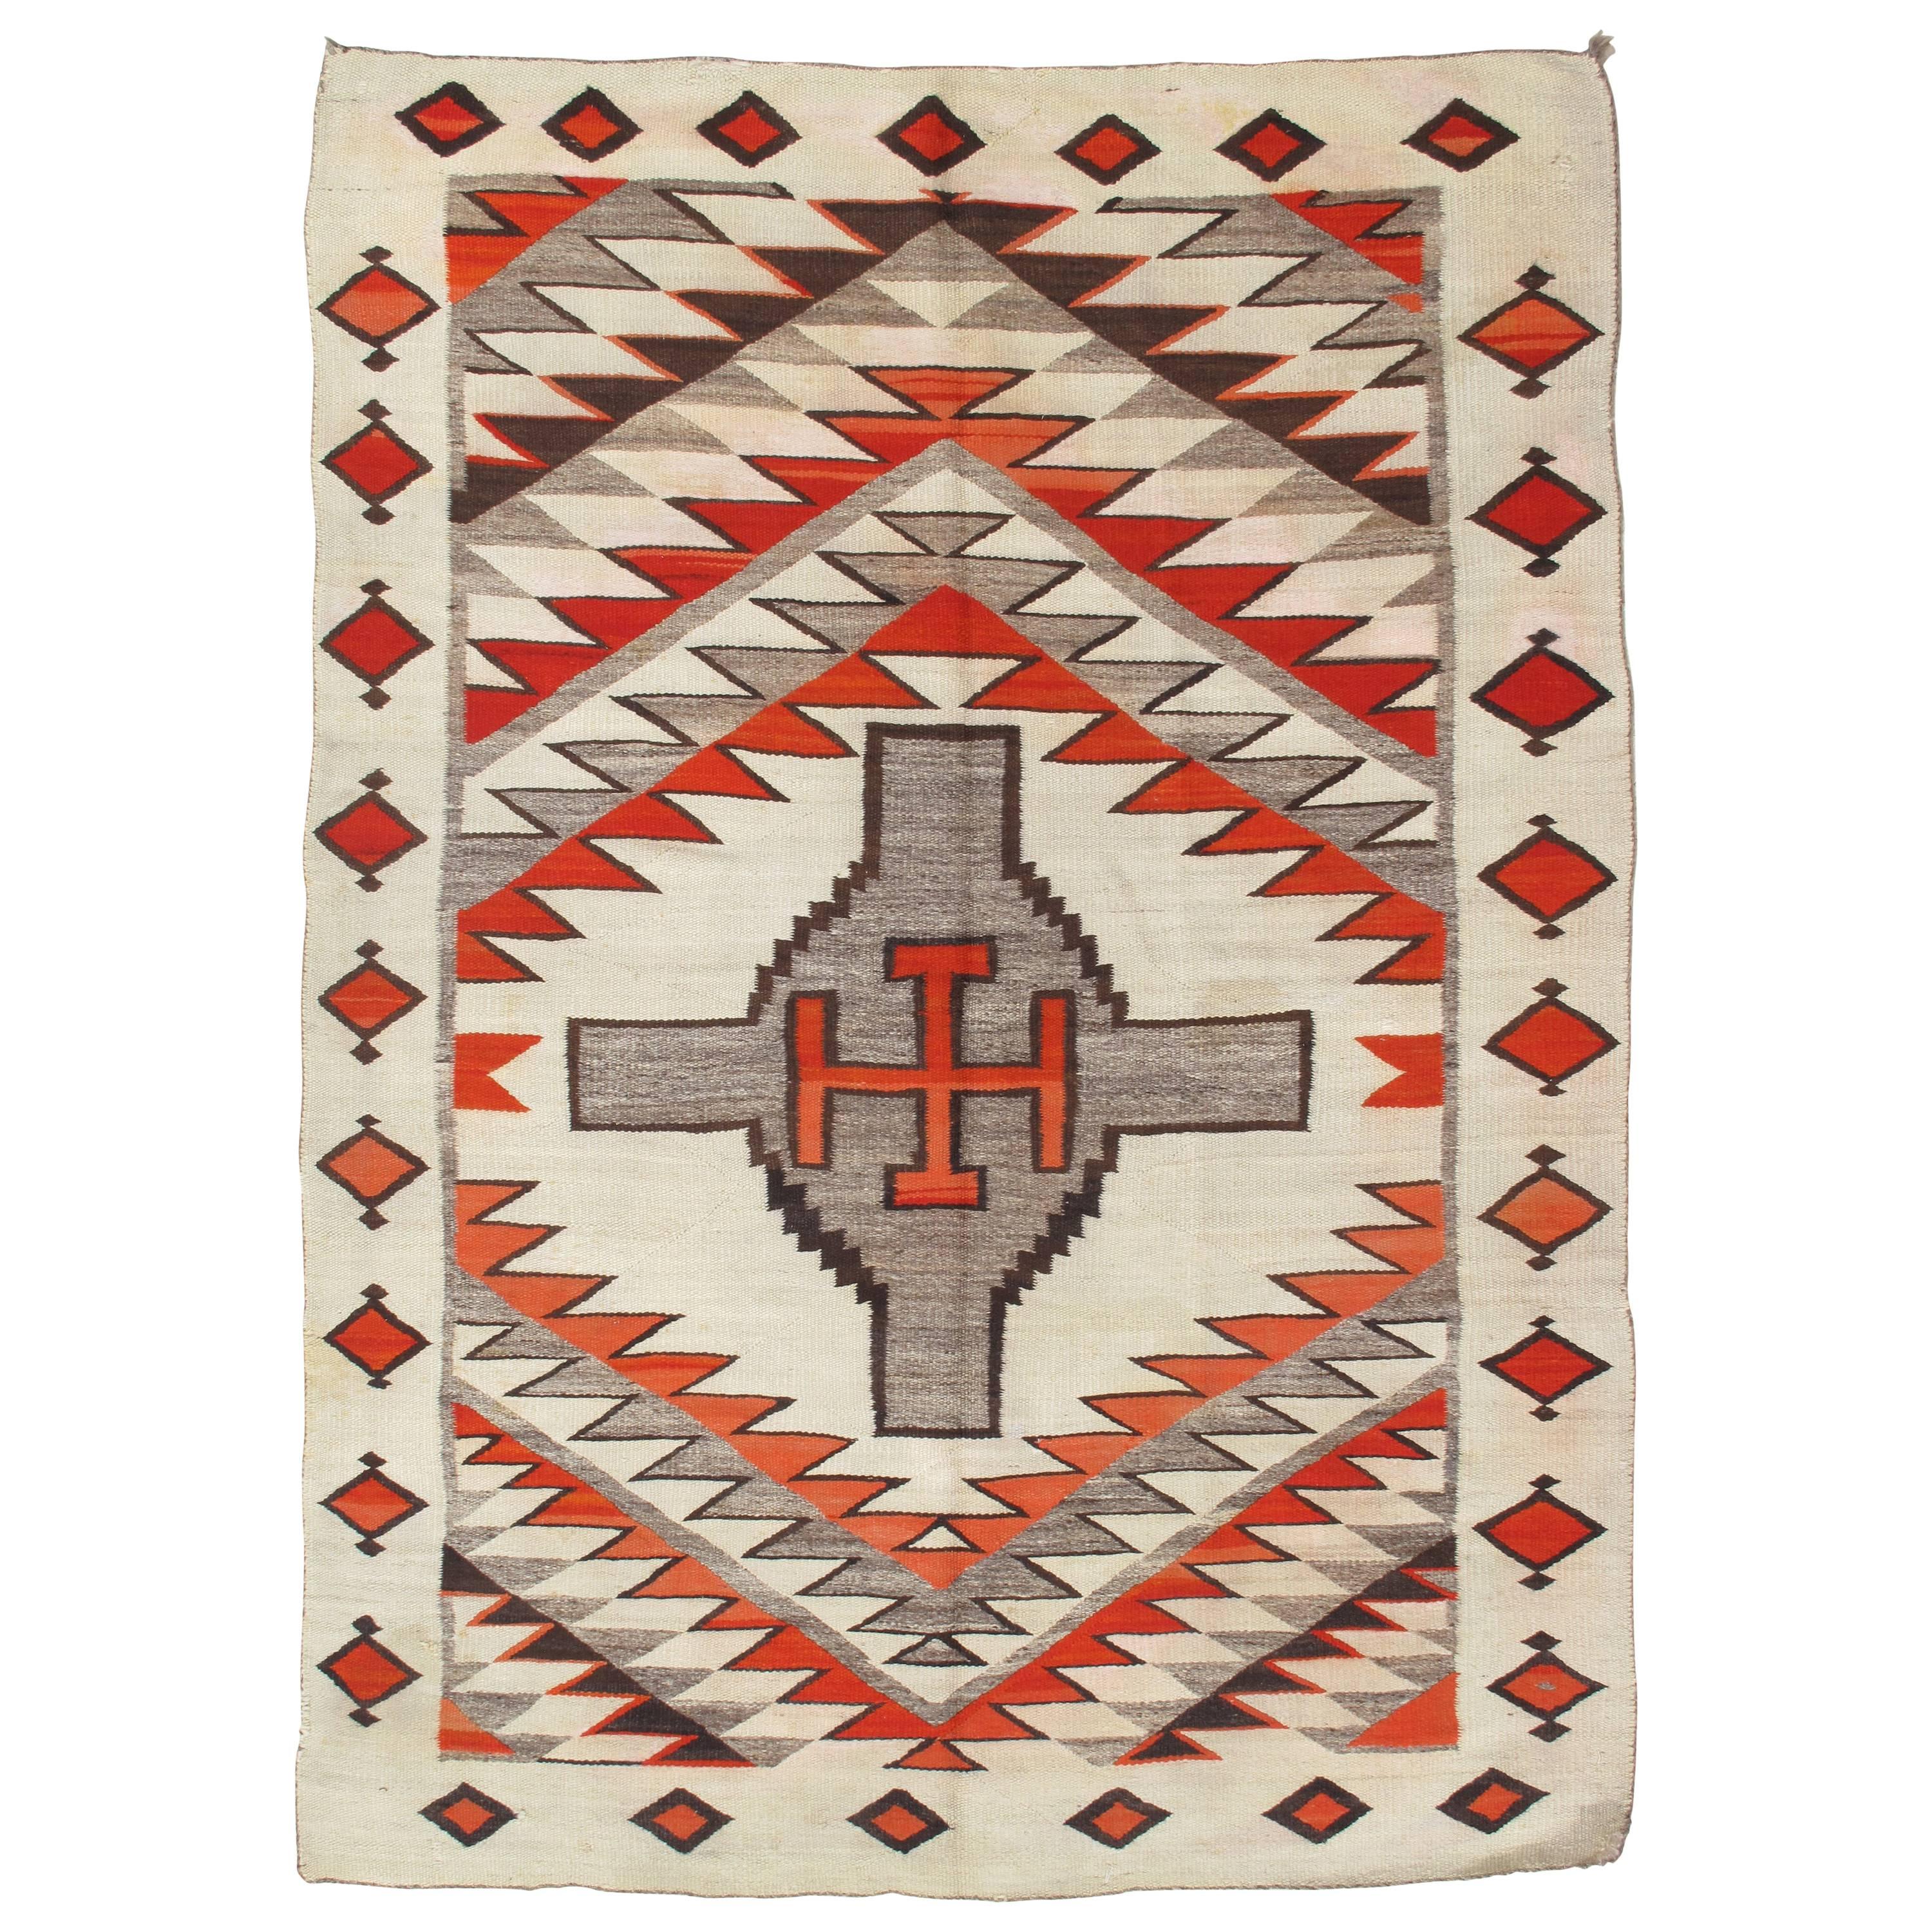 Antique Navajo Carpet, Folk Rug, Handmade Wool Rug, Tan, Coral, Beige